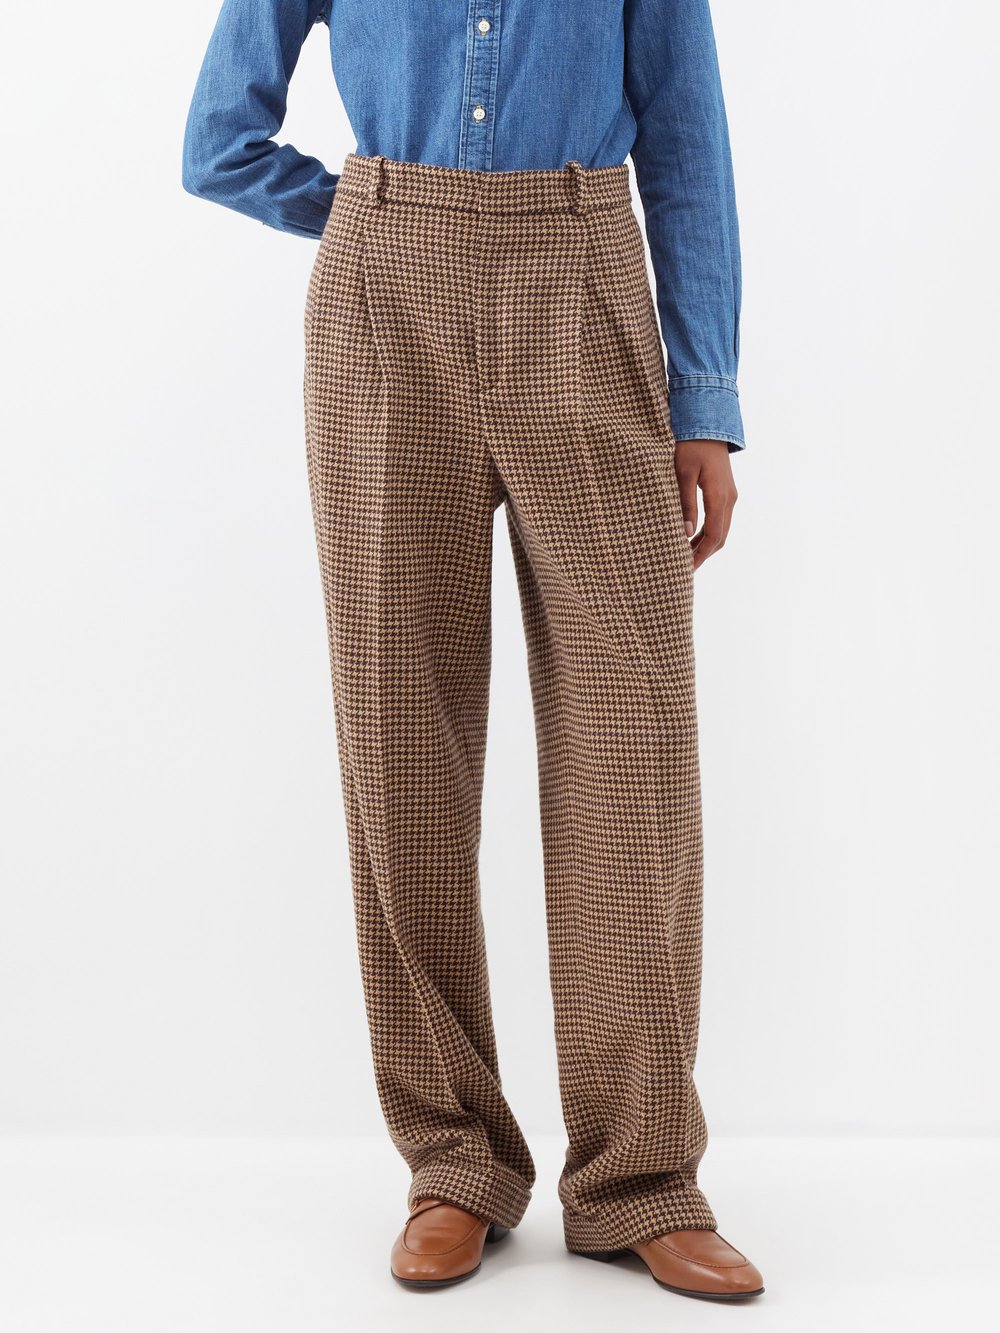 Твидовые брюки с узором «гусиные лапки» и складками спереди Polo Ralph Lauren, коричневый брюки fileo с шерстью 48 размер